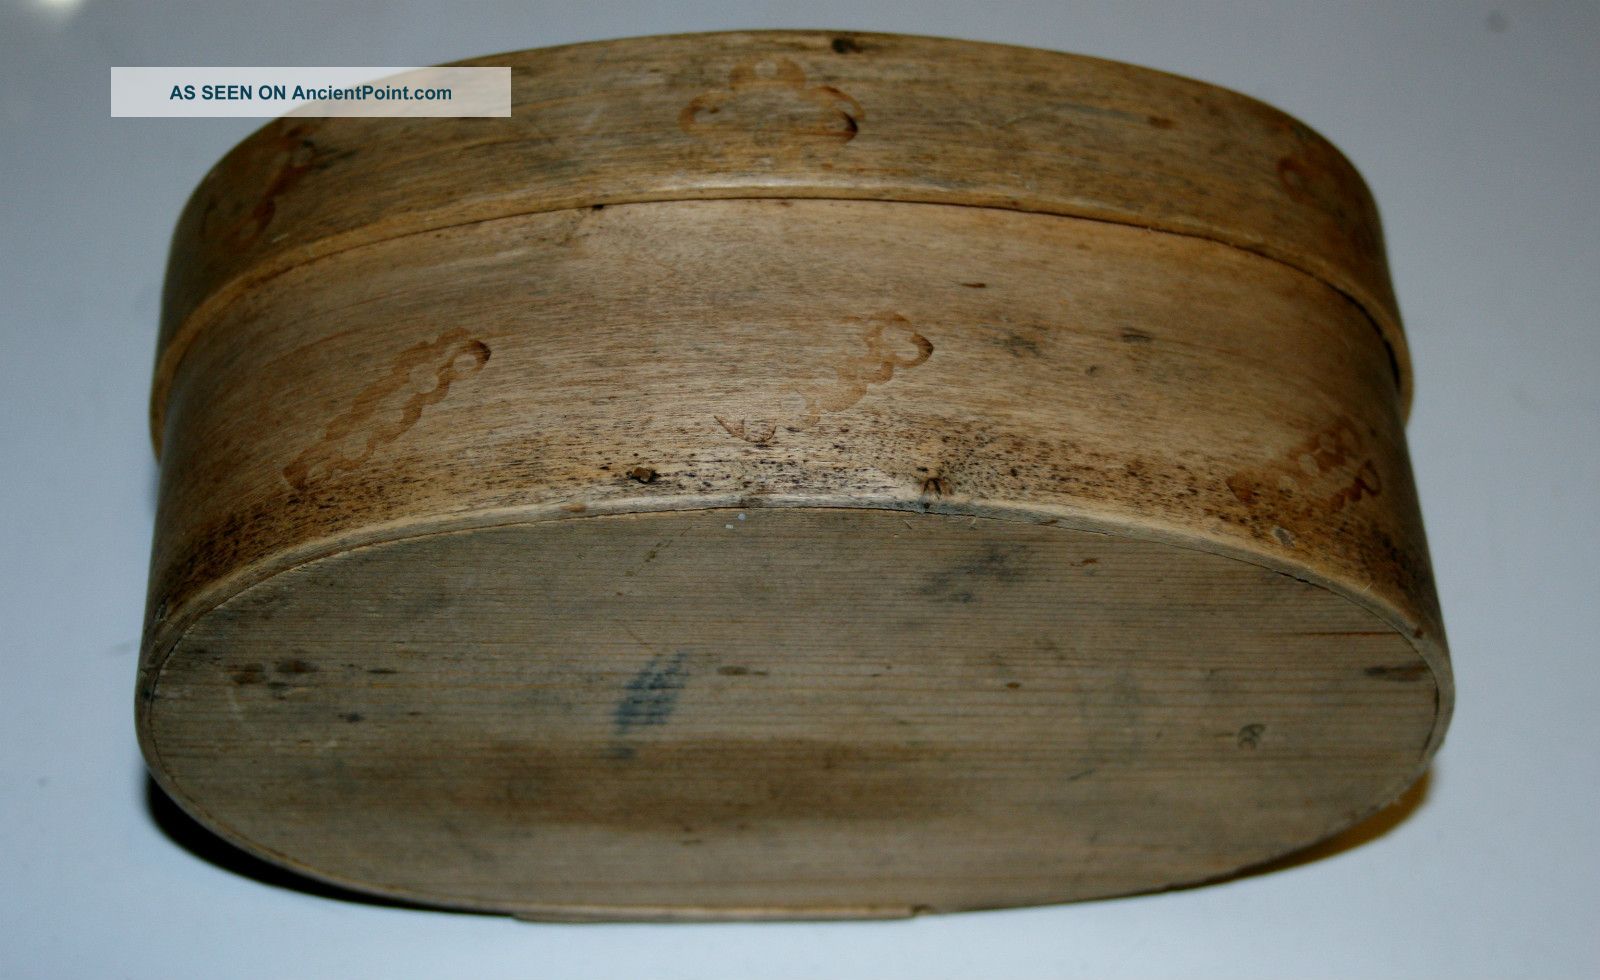  - norwegian_handmade_butter_box_tina_wood_1910_telemark_norway_3_lgw